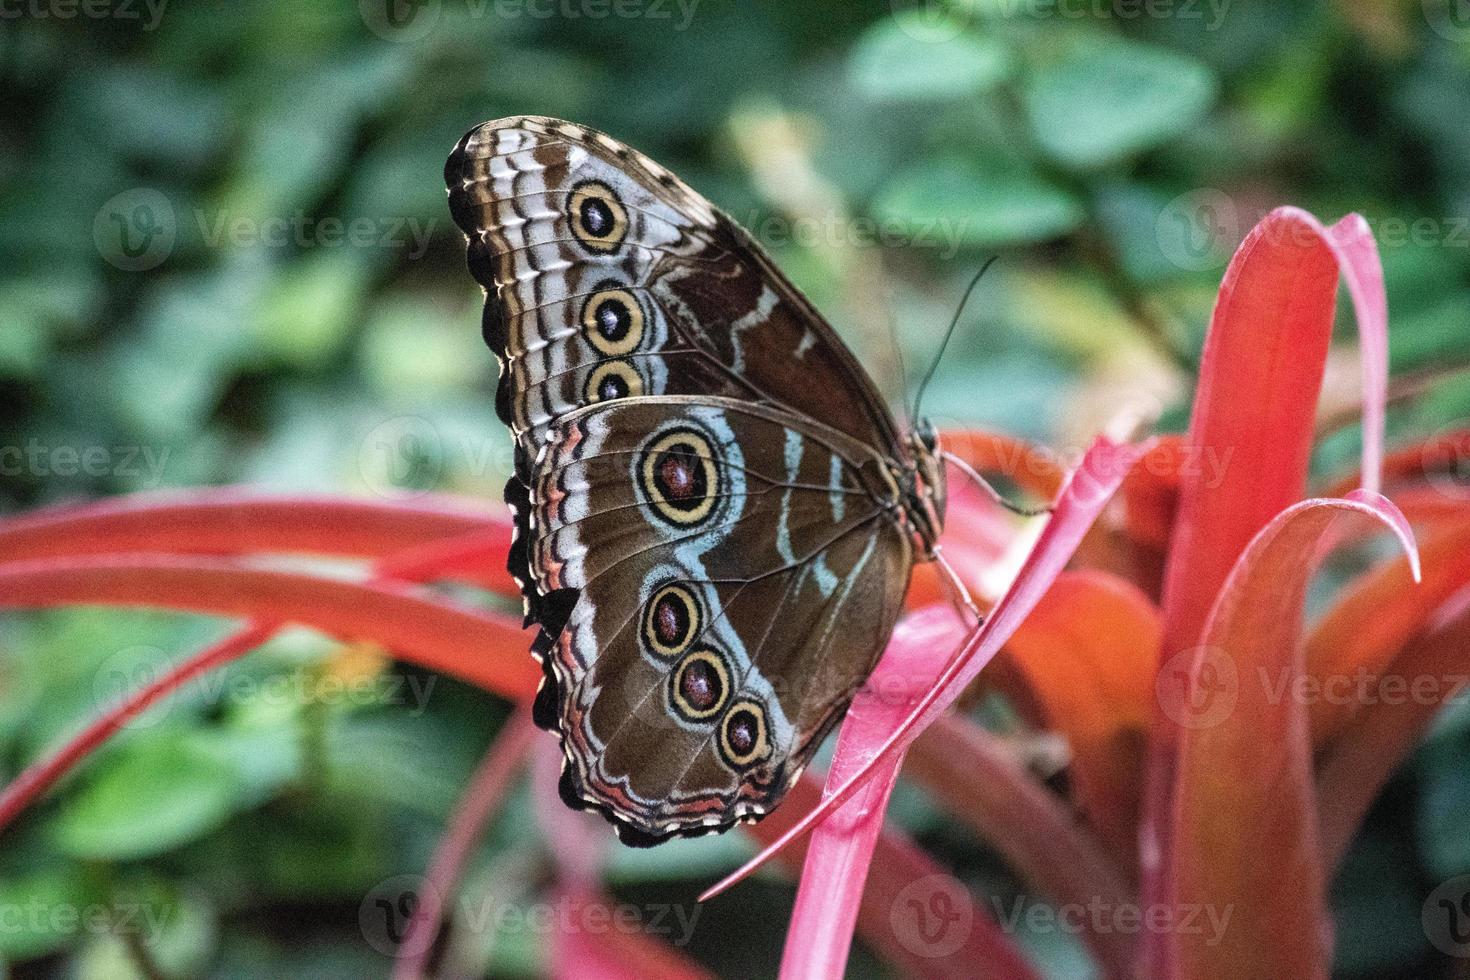 morpho peleides, il peleides blue morpho, comune morpho o l'imperatore è una farfalla tropicale iridescente che si trova in messico, america centrale, sud america settentrionale, paraguay e trinidad. foto